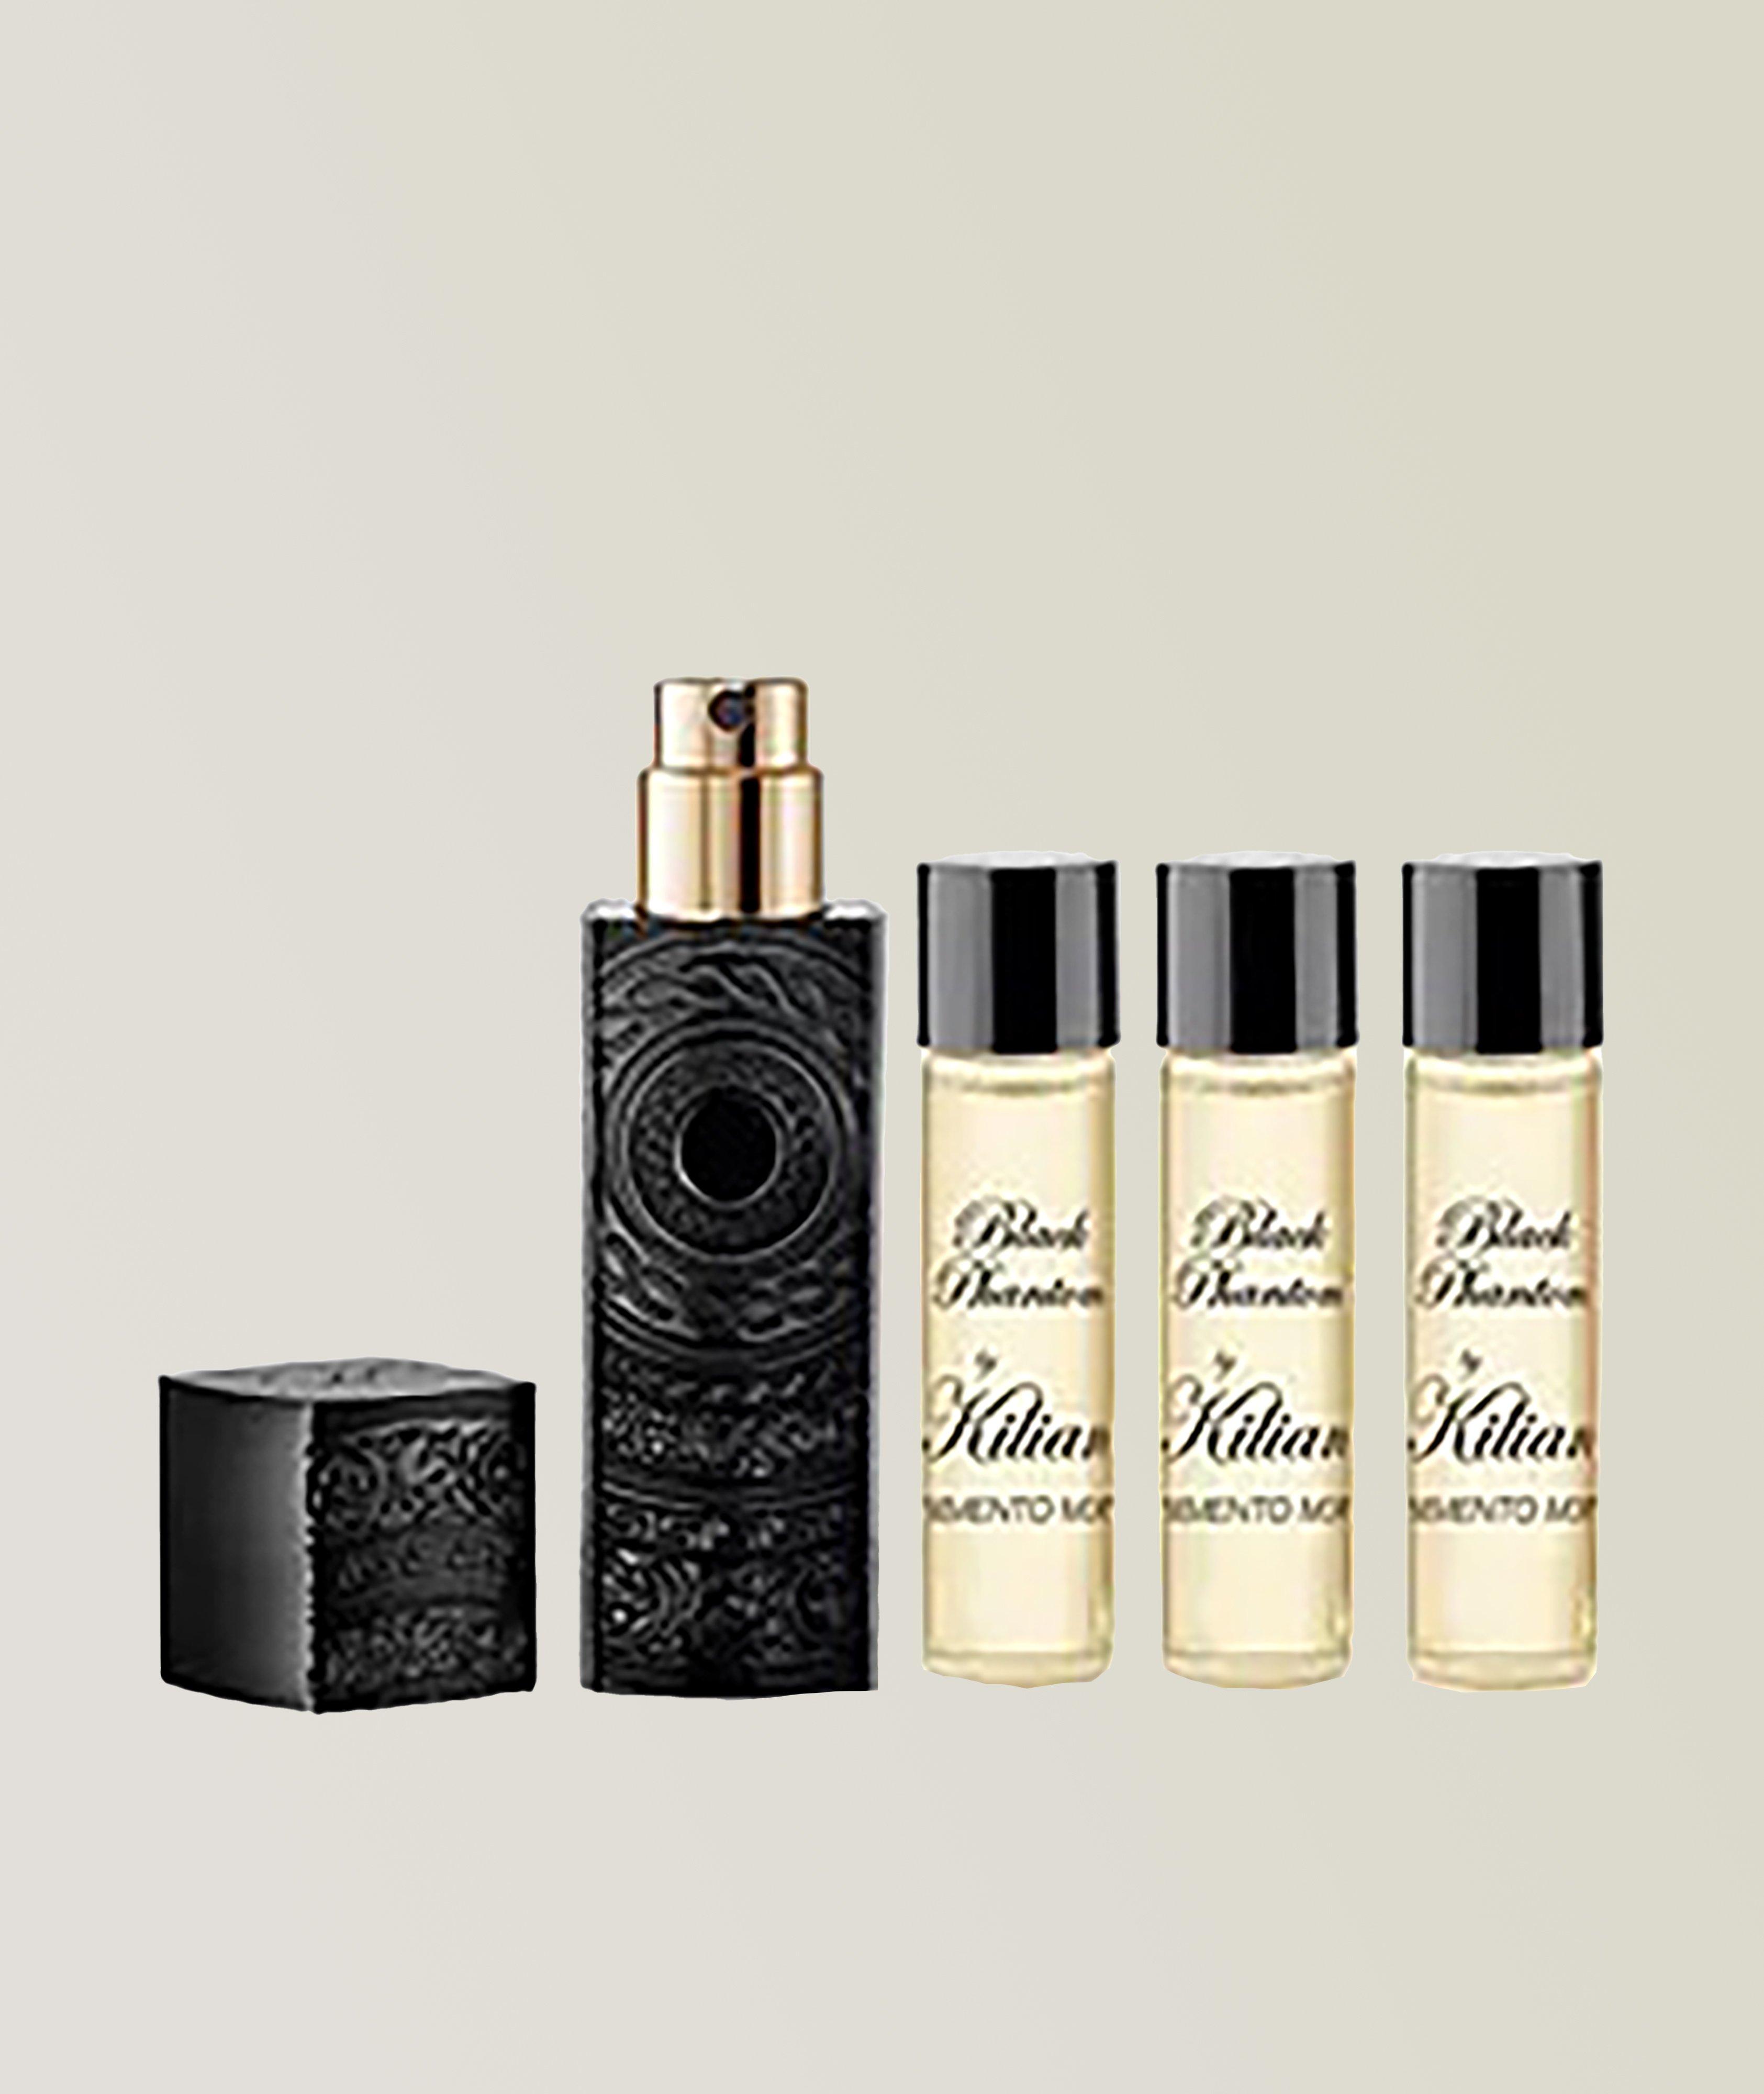 Atomiseur de parfum Black Phantom Memento Mori avec quatre recharges image 0